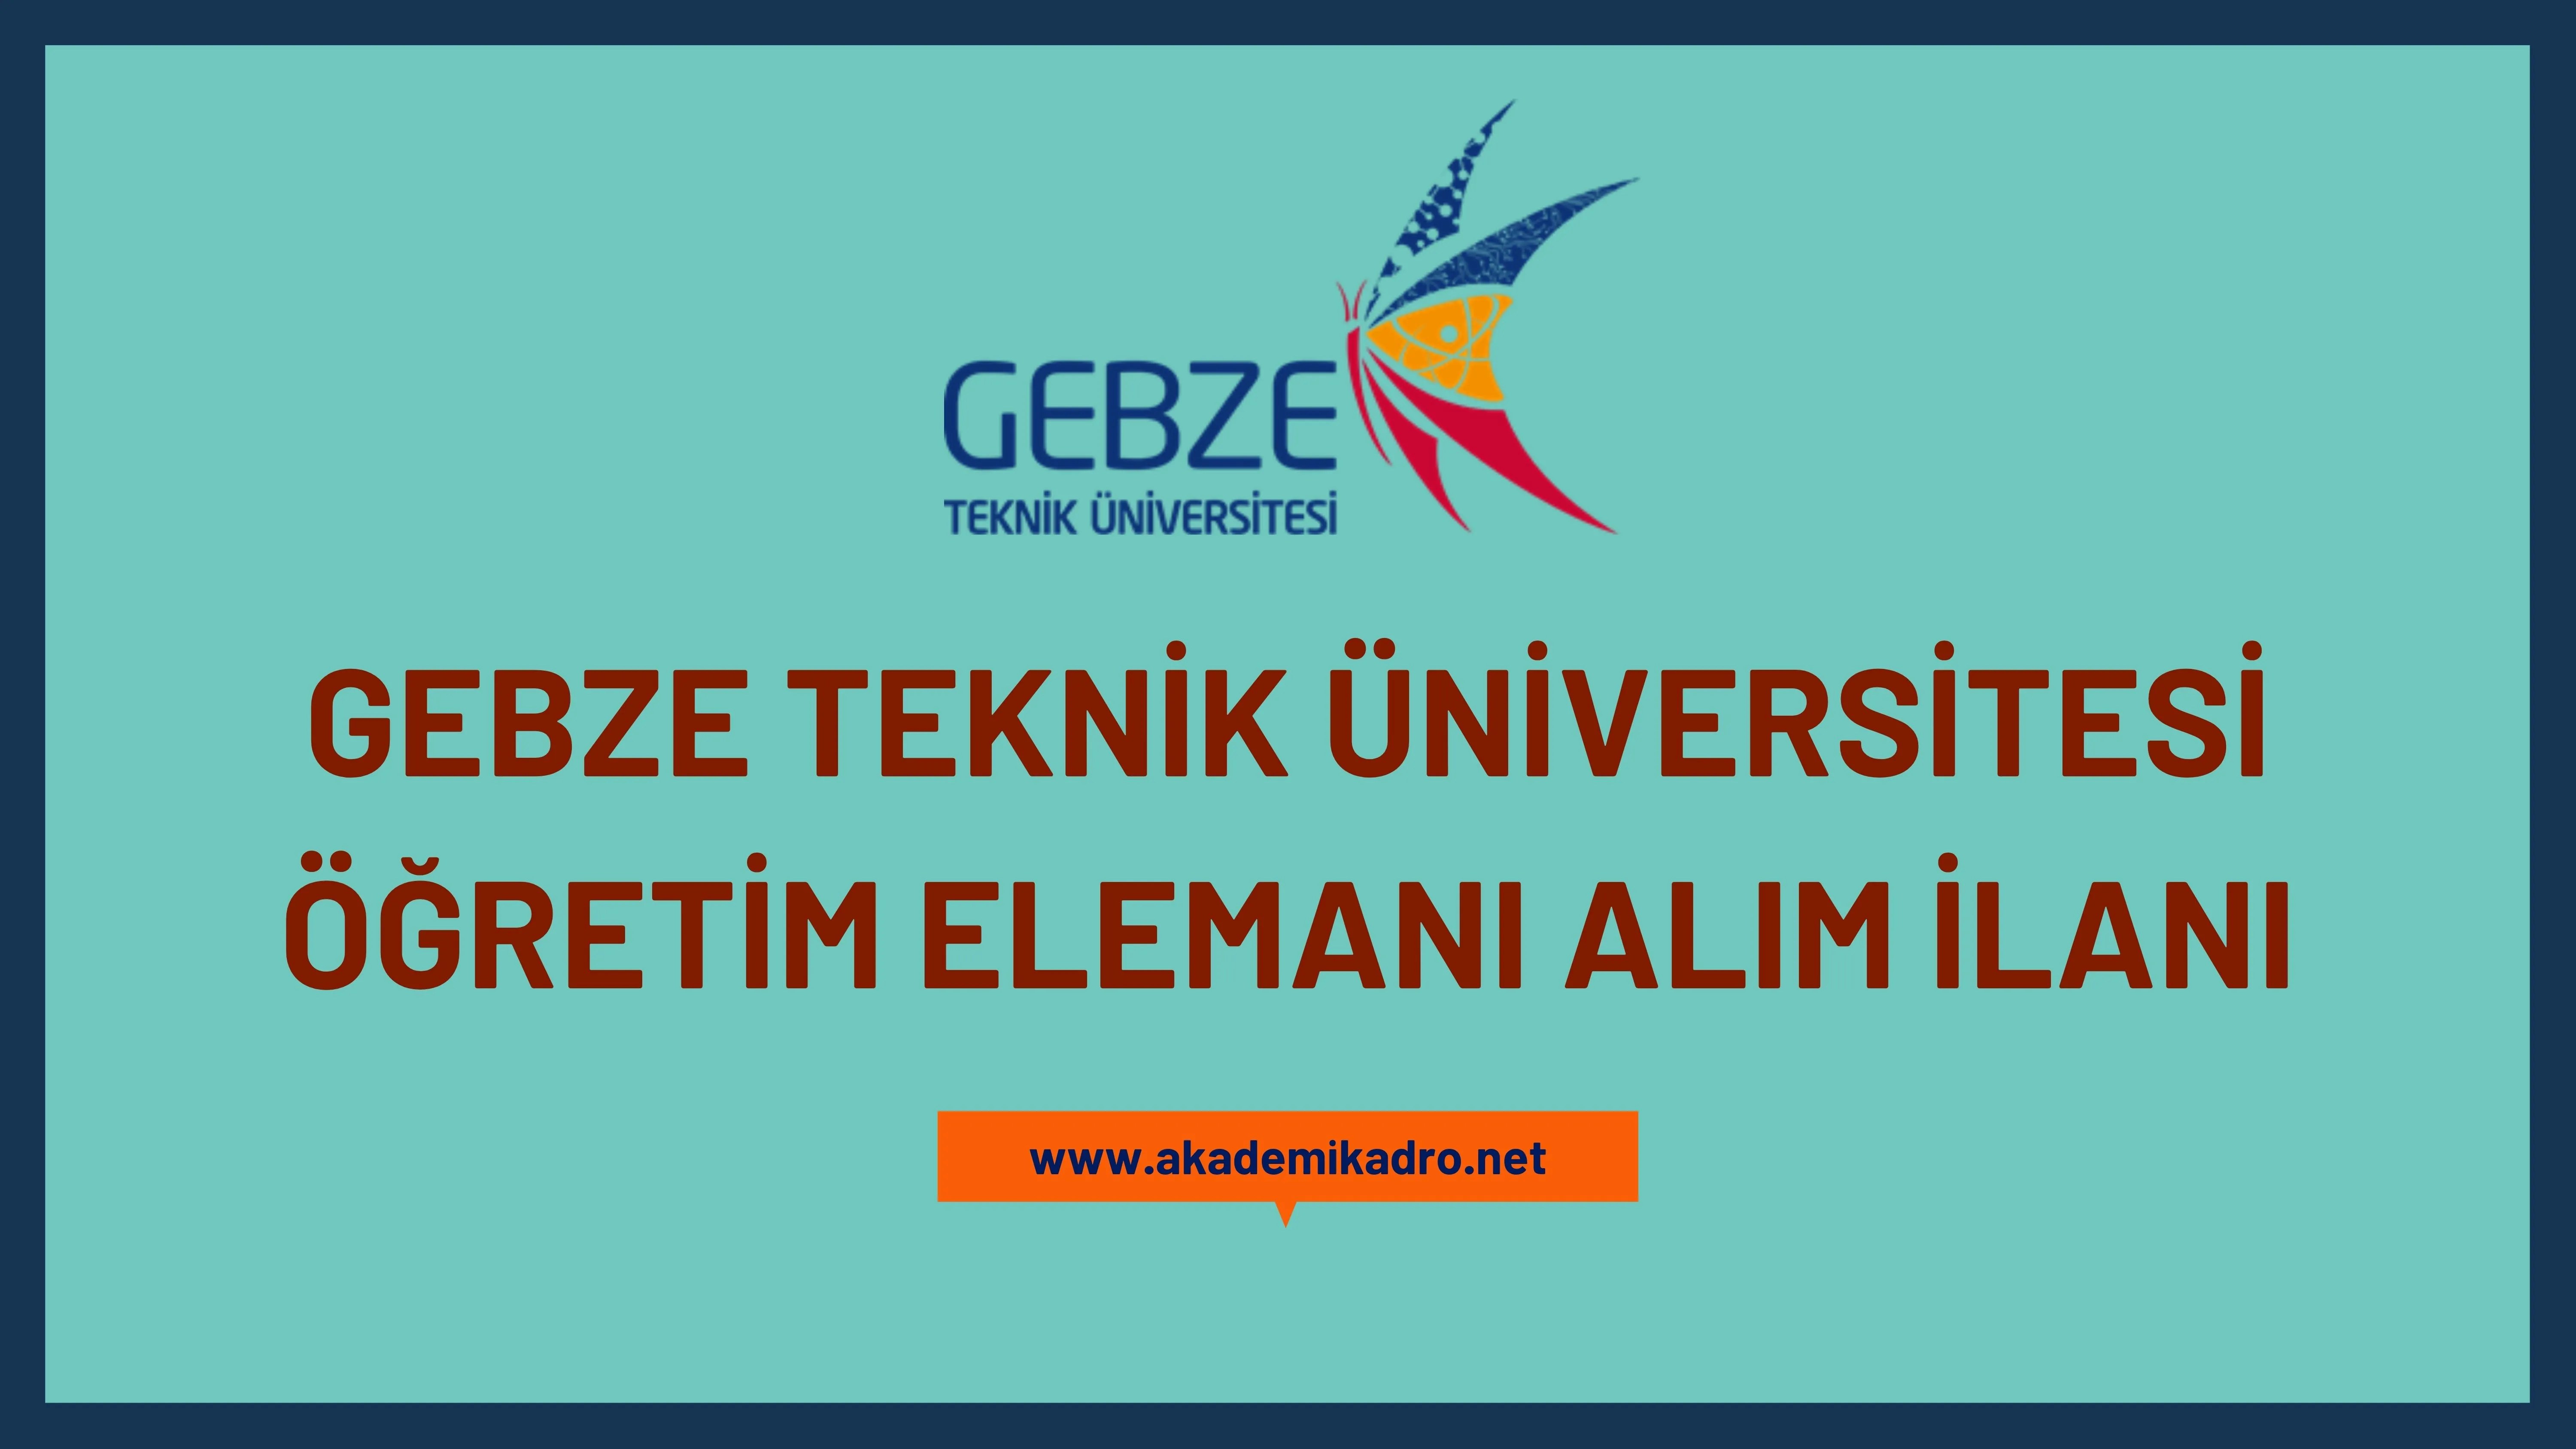 Gebze Teknik Üniversitesi 3 öğretim görevlisi alacaktır. Son başvuru tarihi 16 Ekim 2023